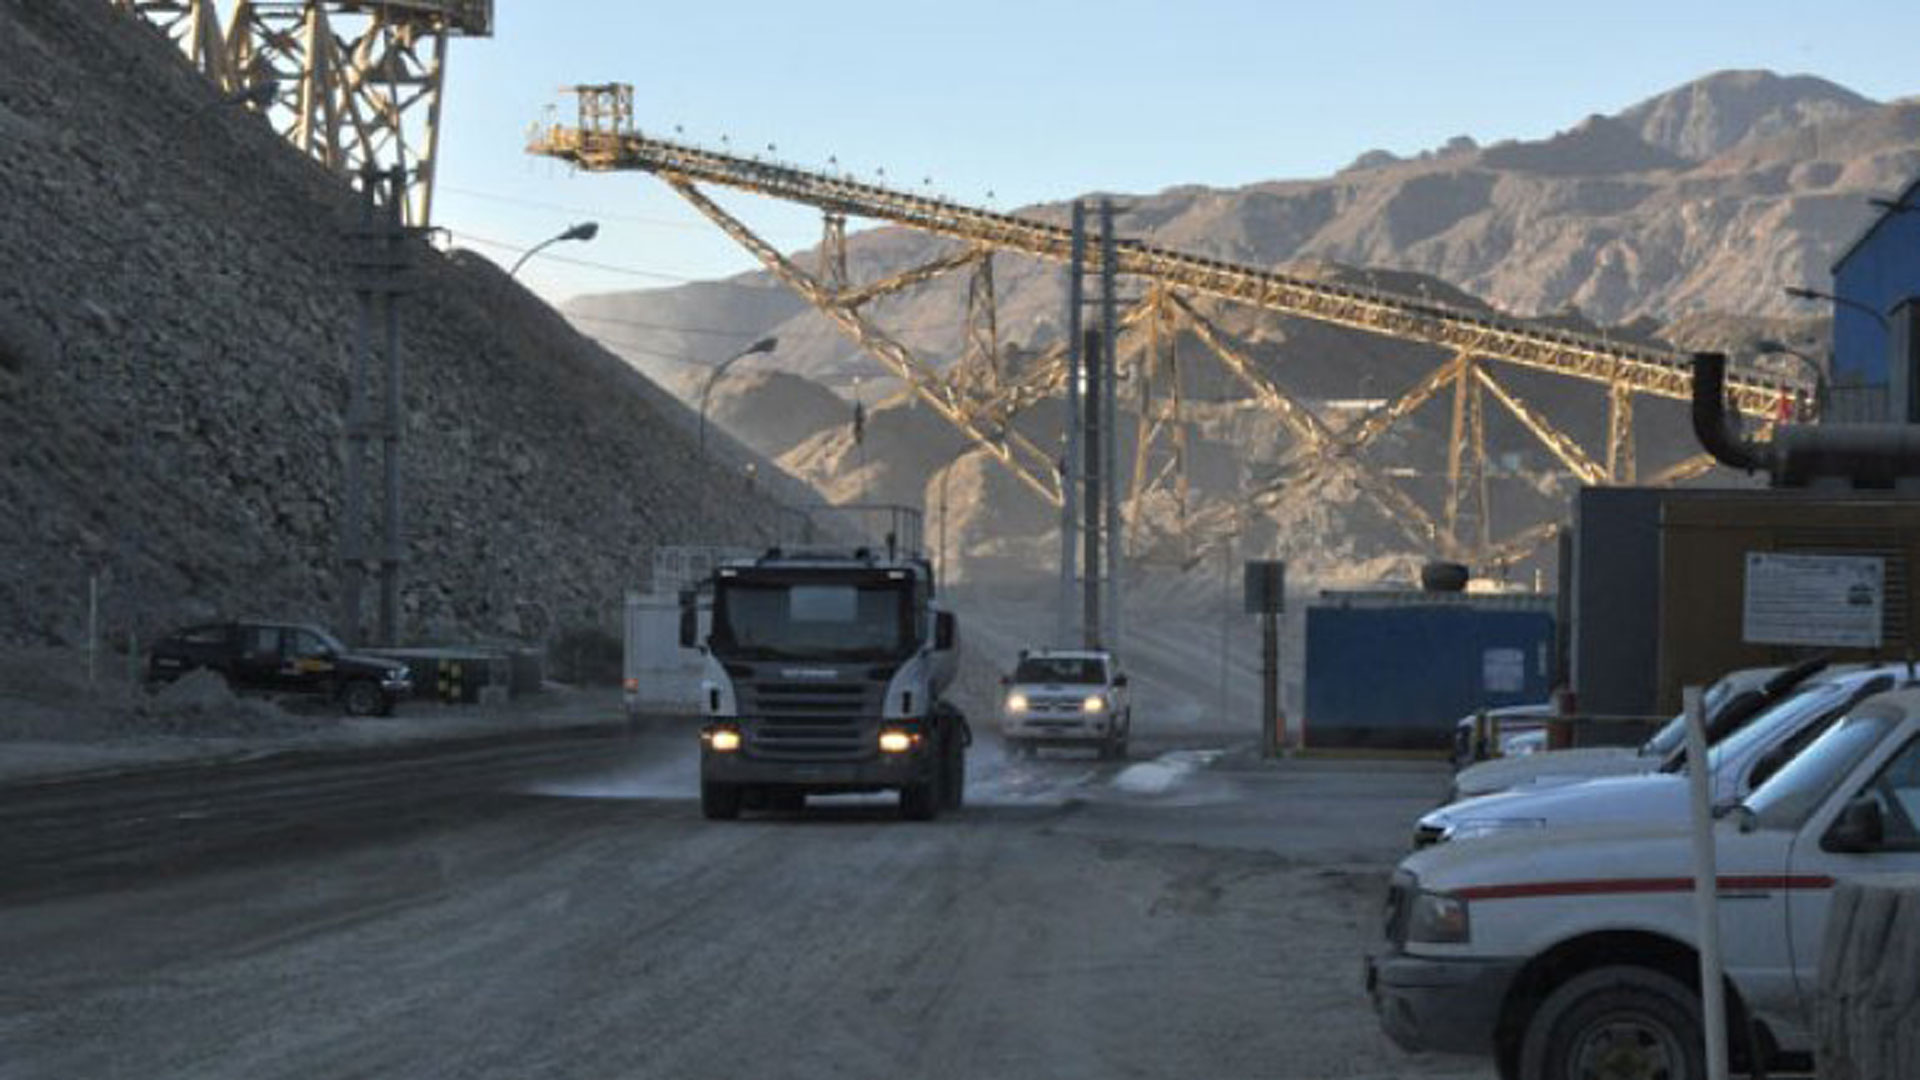 La única operación de cobre que estaba activa en la Argentina, Minera la Alumbrera, cesó sus operaciones en 2018